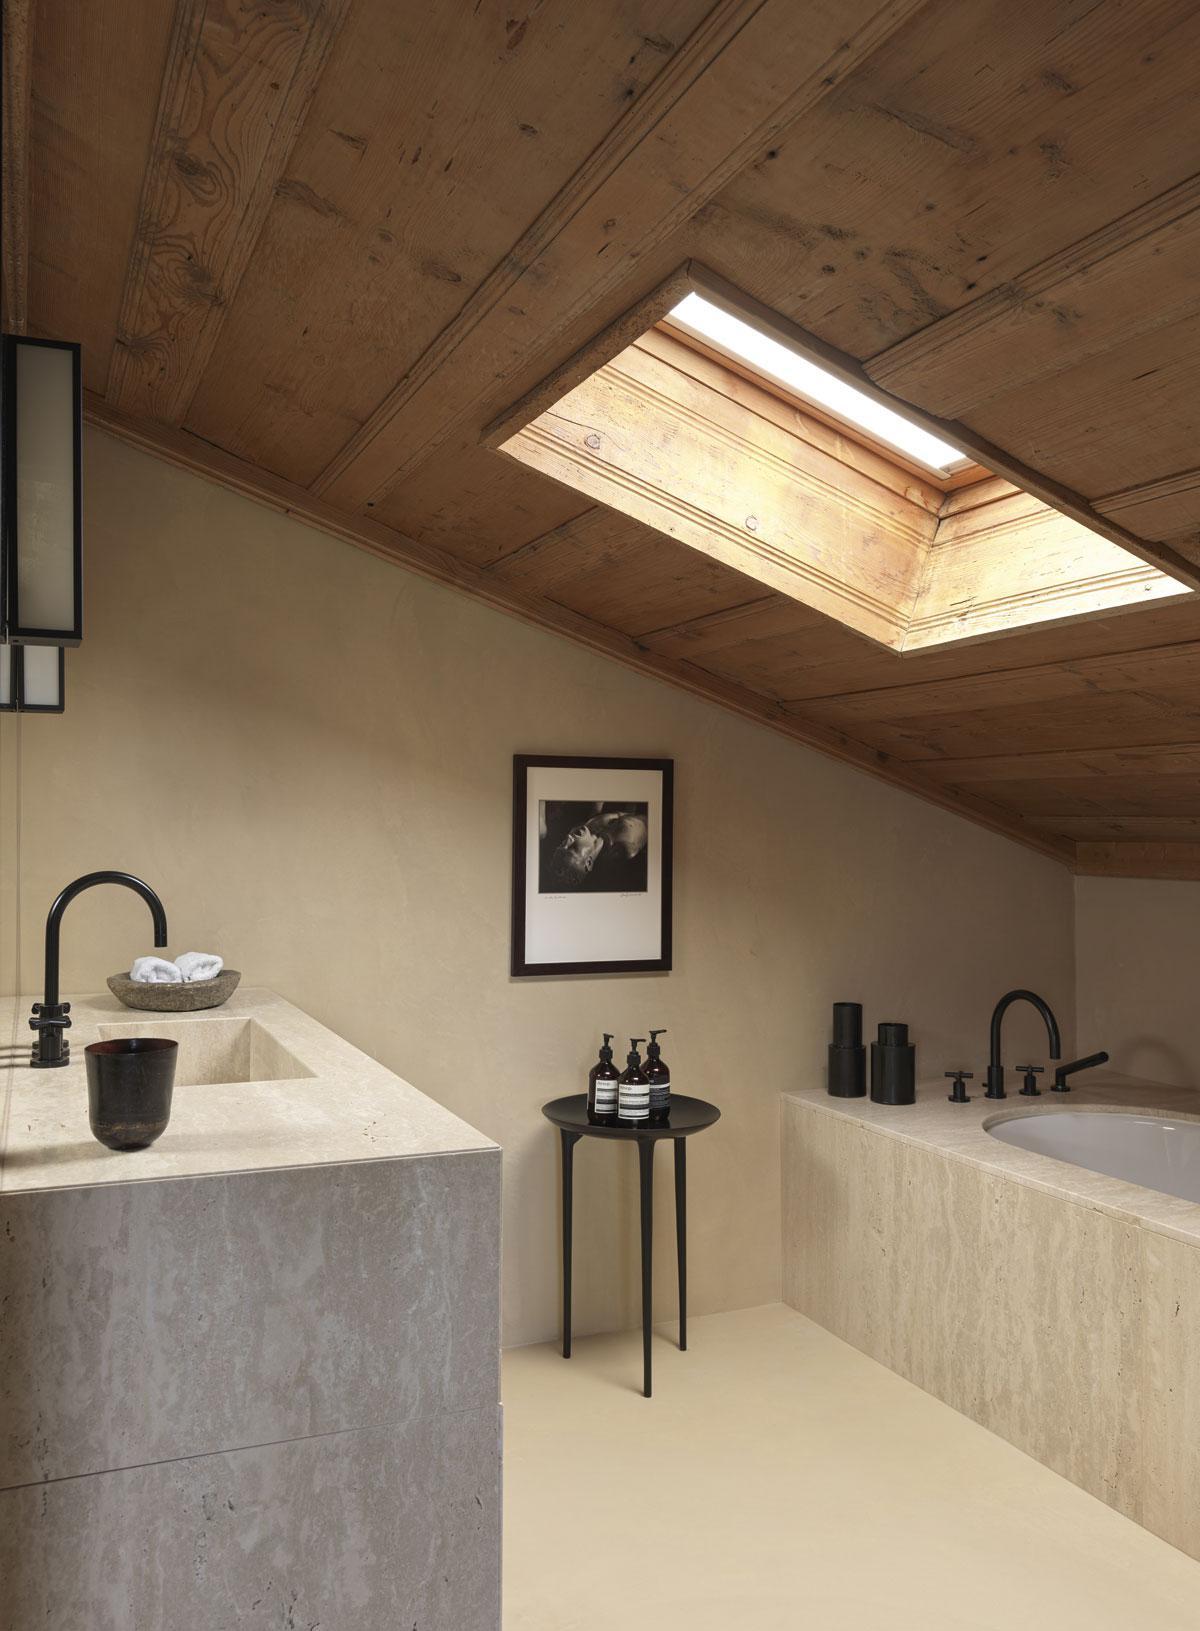 Le travertin contraste avec le bois du plafond en pente dans la salle de bains principale. La photo est signée Leni Riefenstahl.